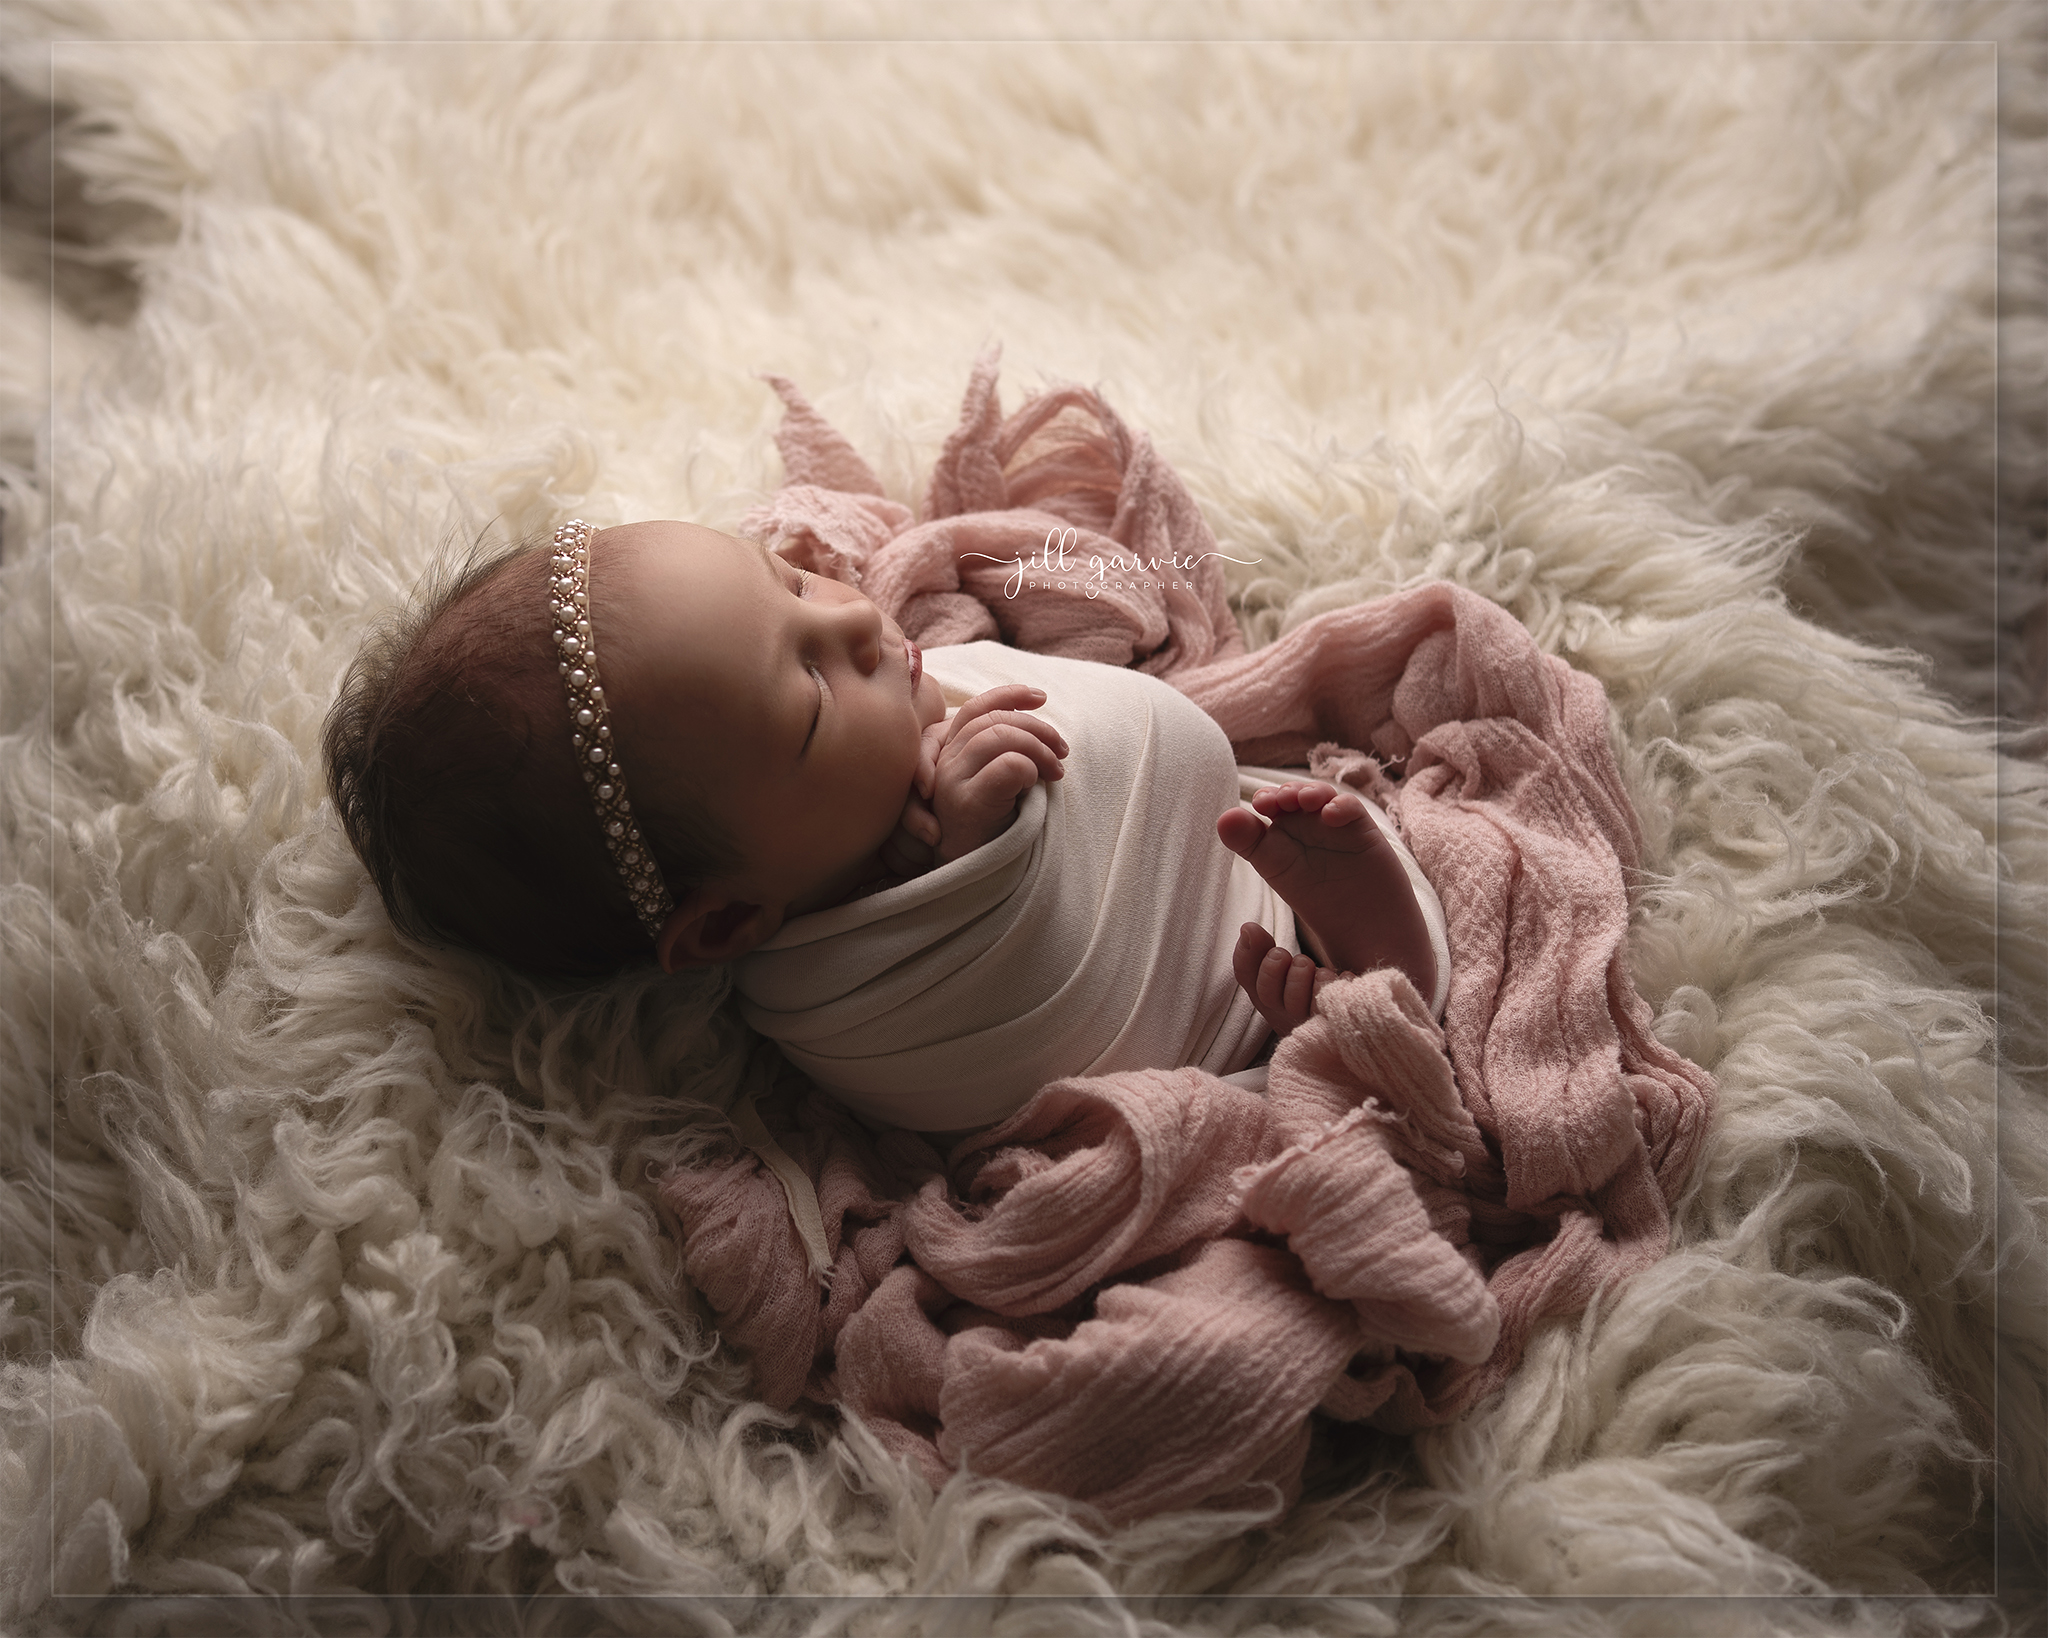 Newborn baby Sloane at her photoshoot